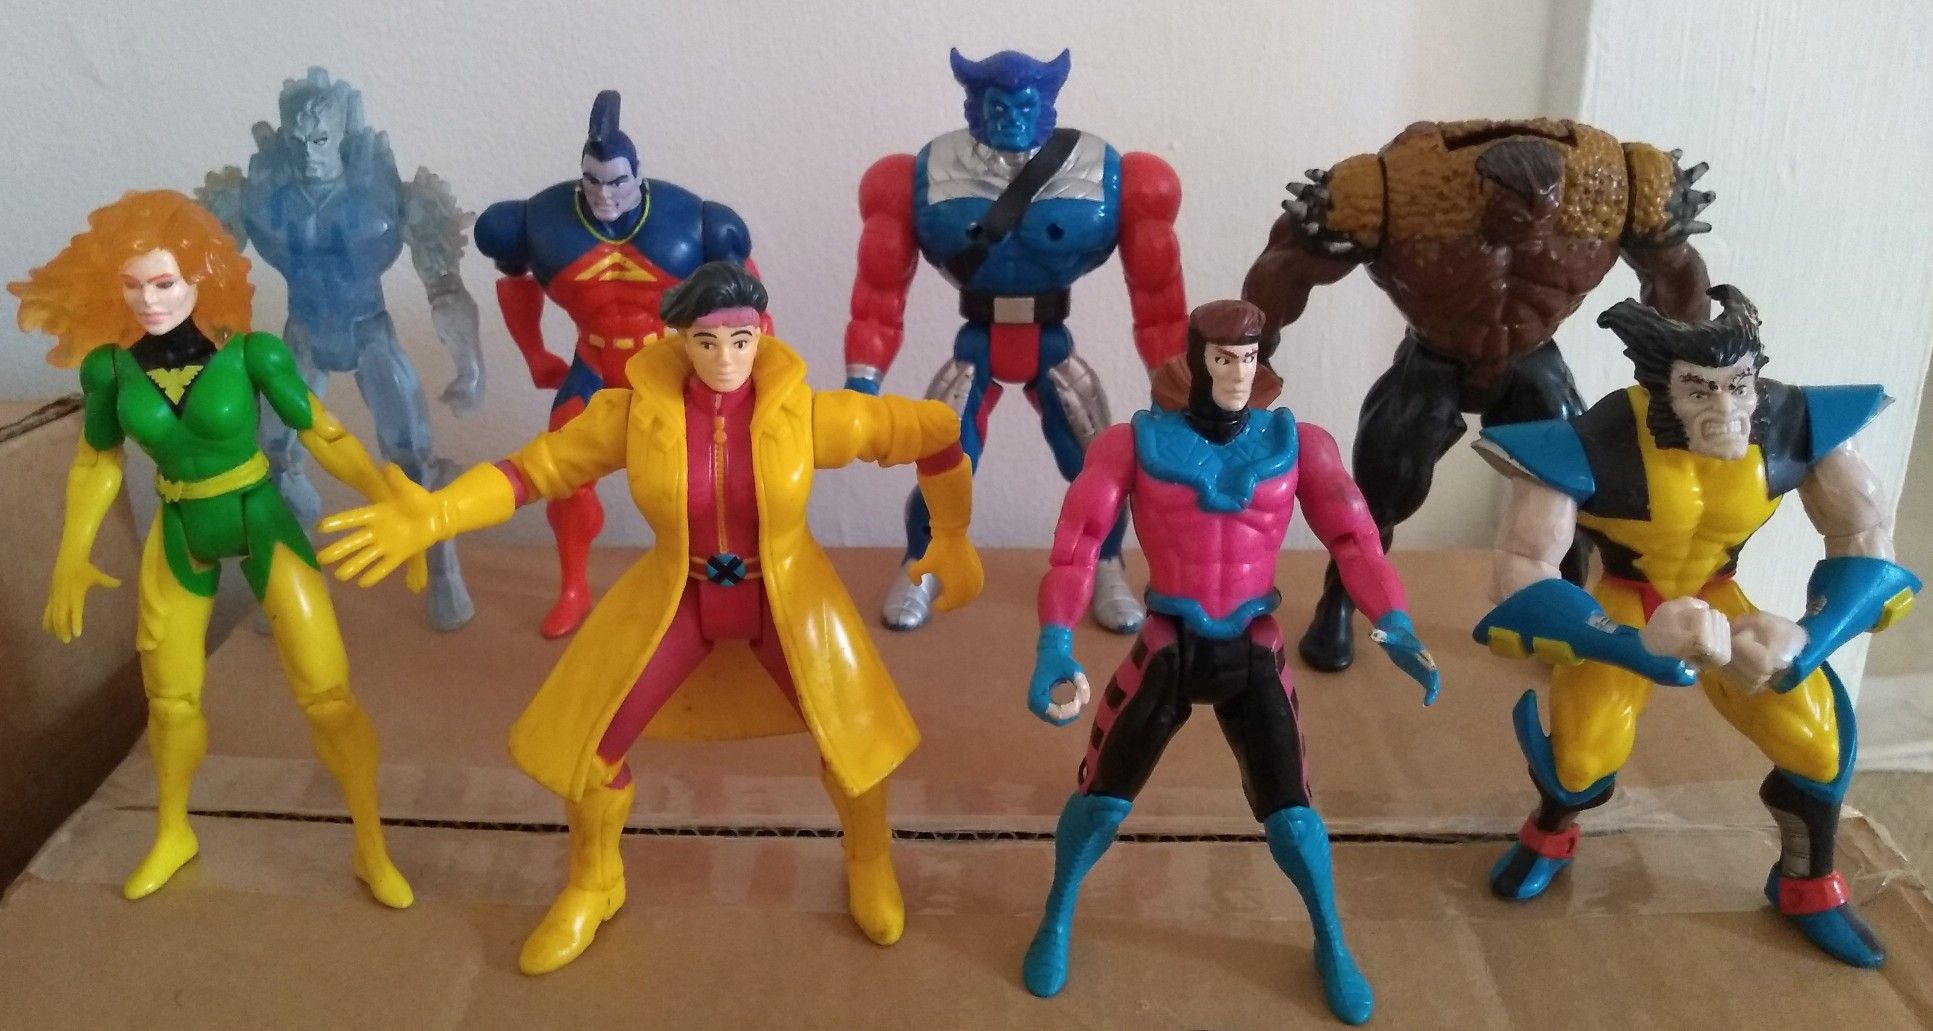 Marvel ToyBiz Uncanny X-Men Action Figure Lot 1990s ToyBiz Vintage Collectible